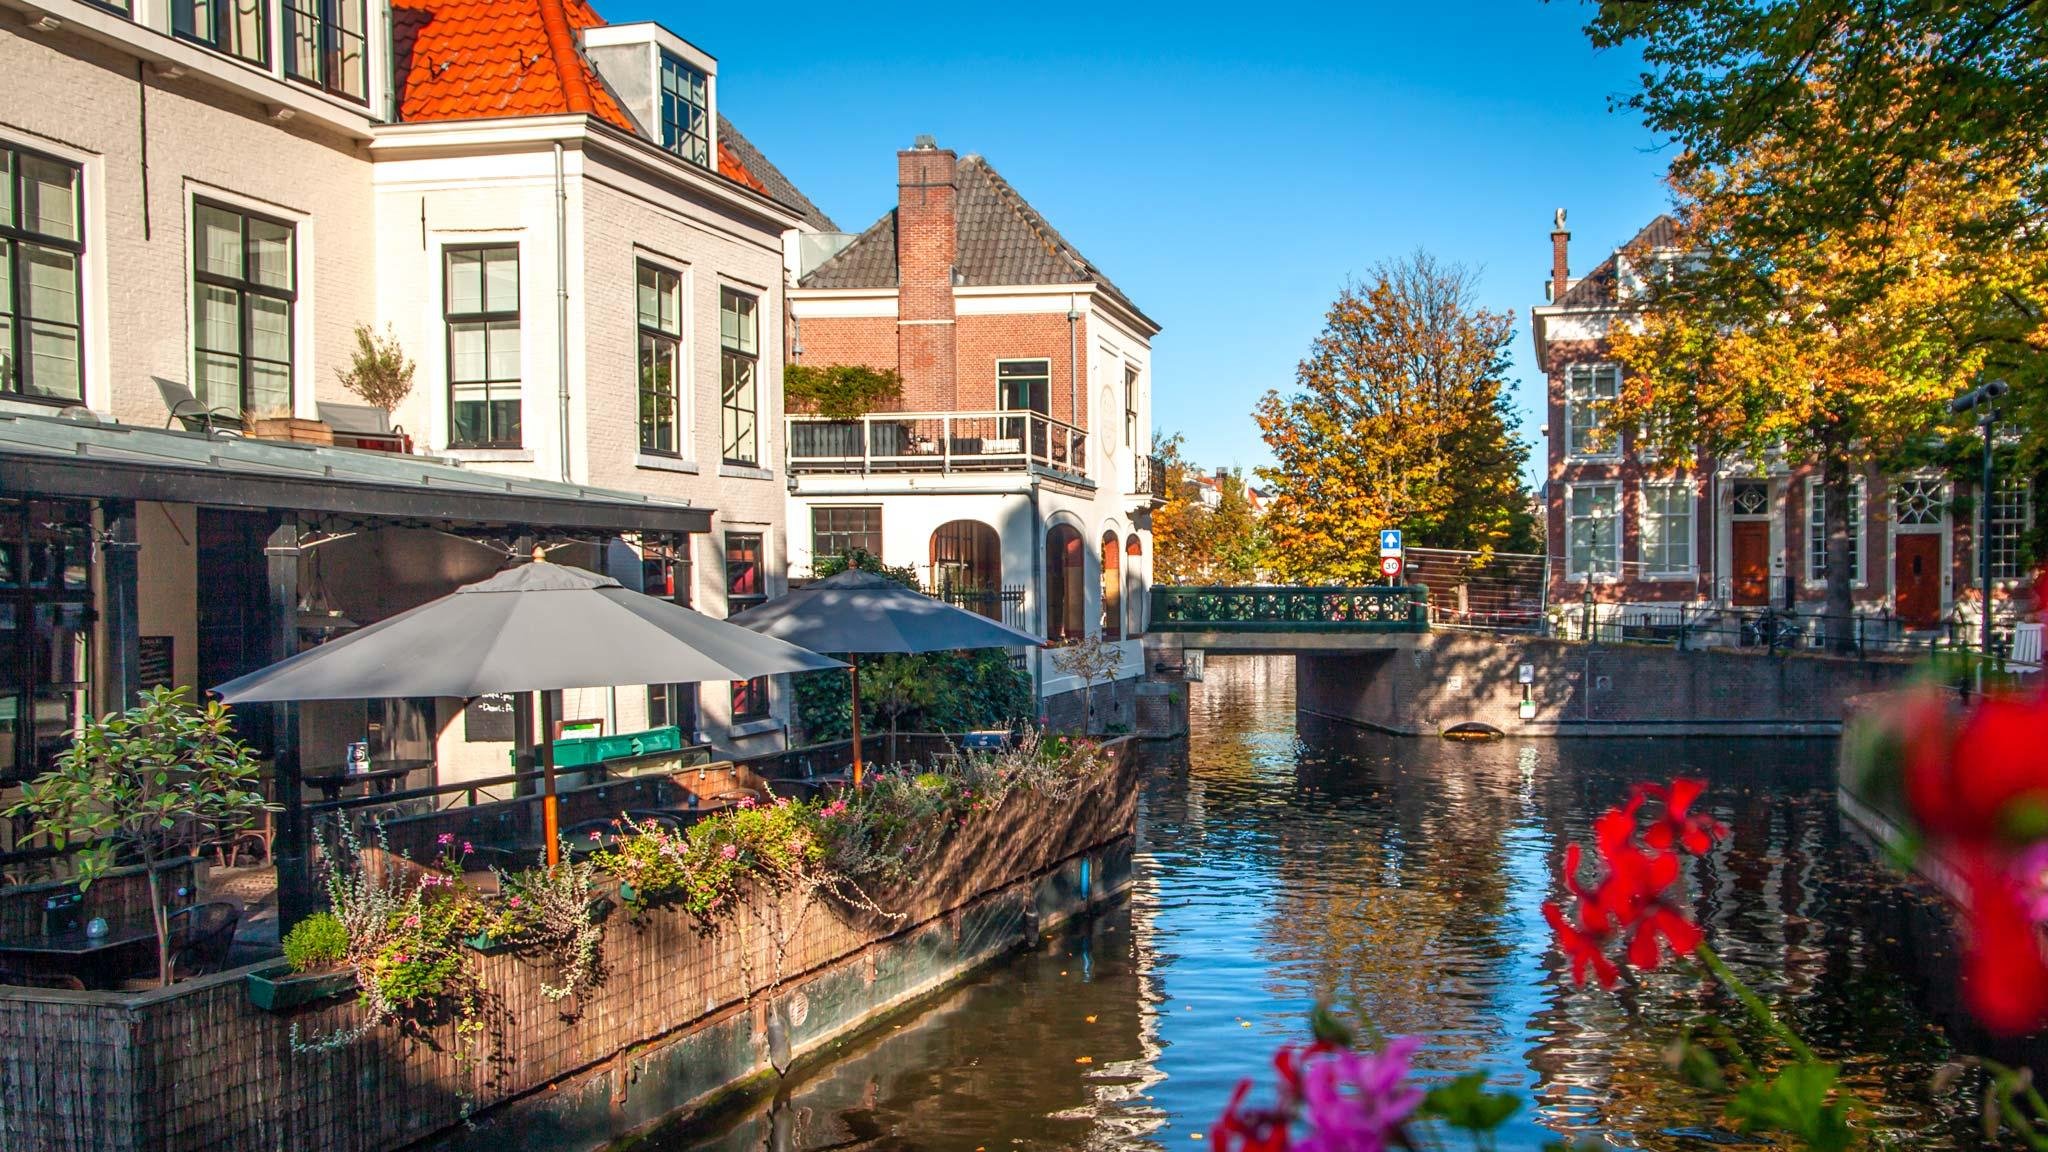 السياحة في هولندا   هولندا   أماكن سياحية   سياحة   وجهات   سفر   رحلات طيران